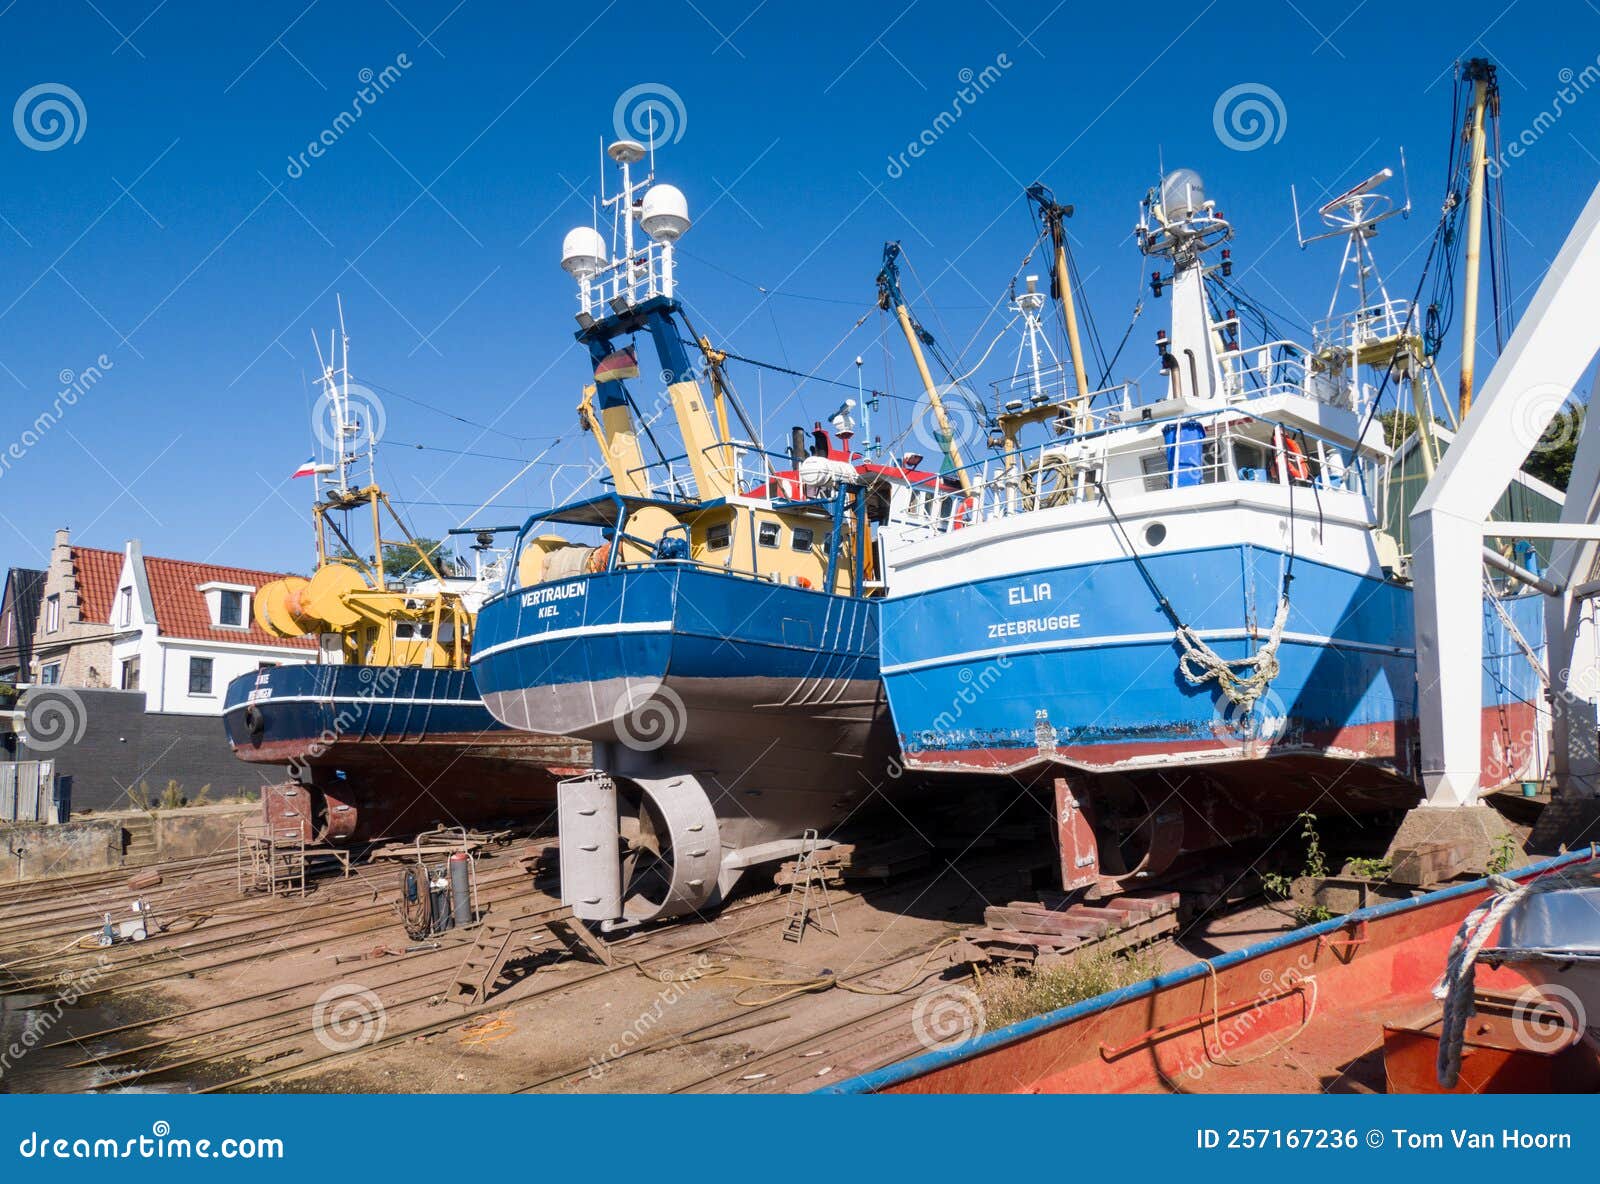 fishing boats on slipway urk